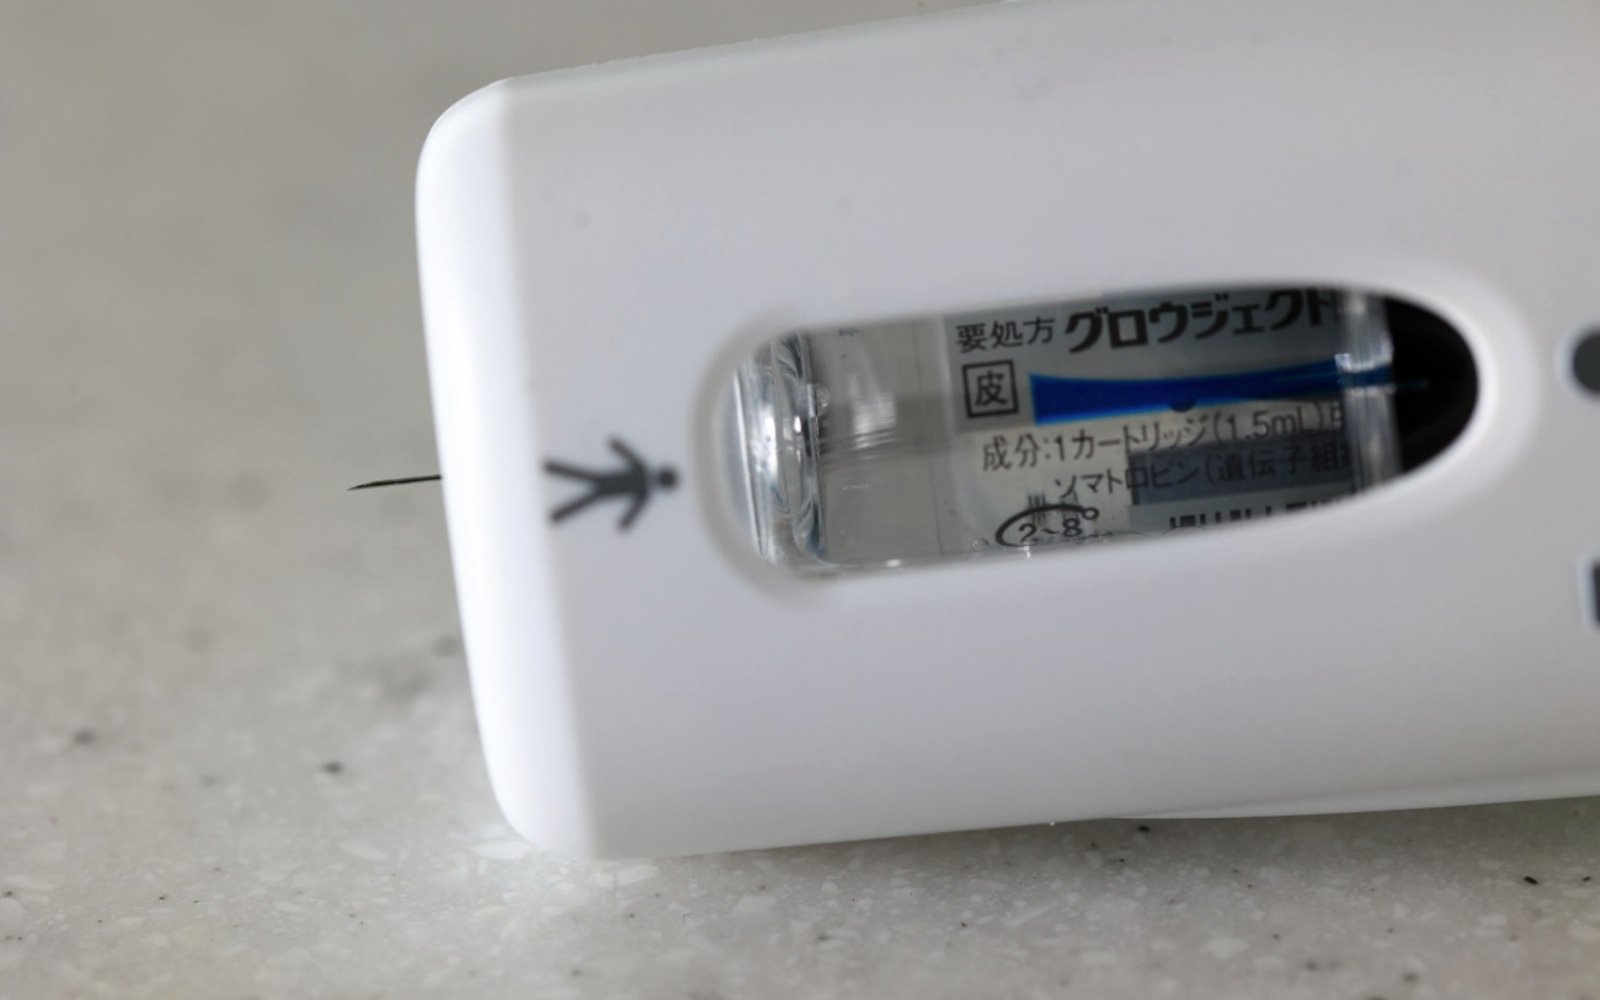 電動式医薬品注入器「グロウジェクター®L」。注射ボタンを押すと電動で隠れていた針が出る。